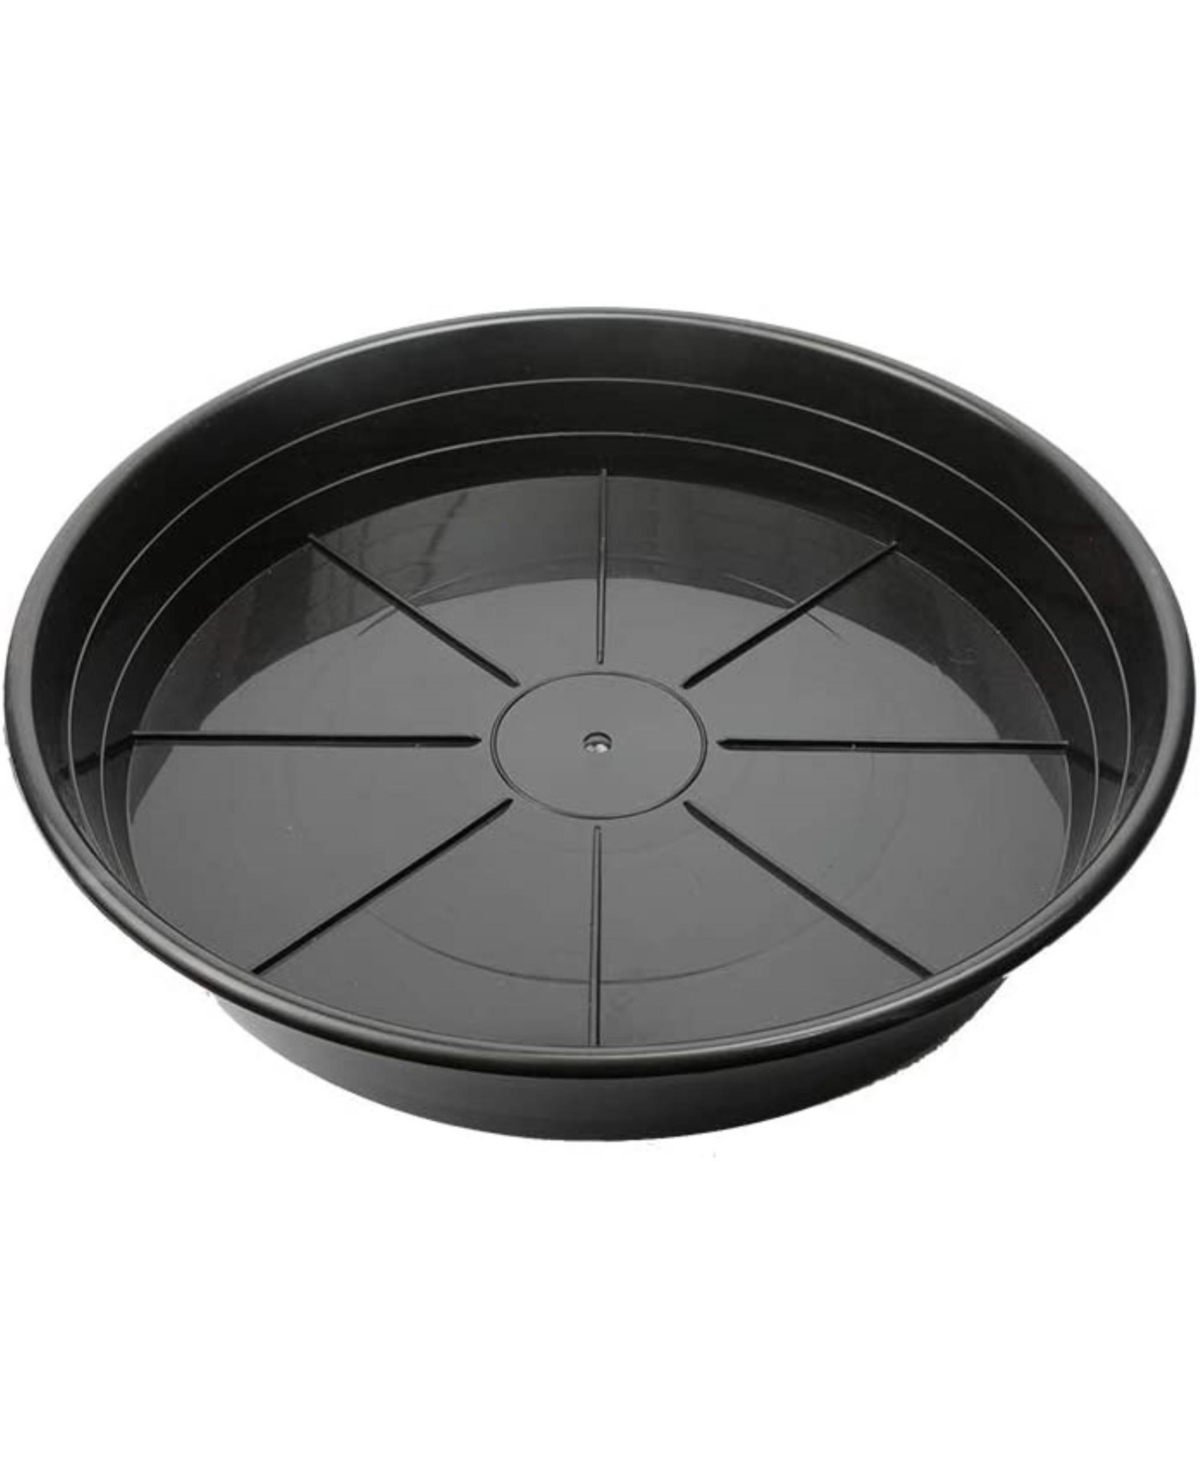 Uv-Resistant Premium Plastic Plant Saucer, 16 inches - Black